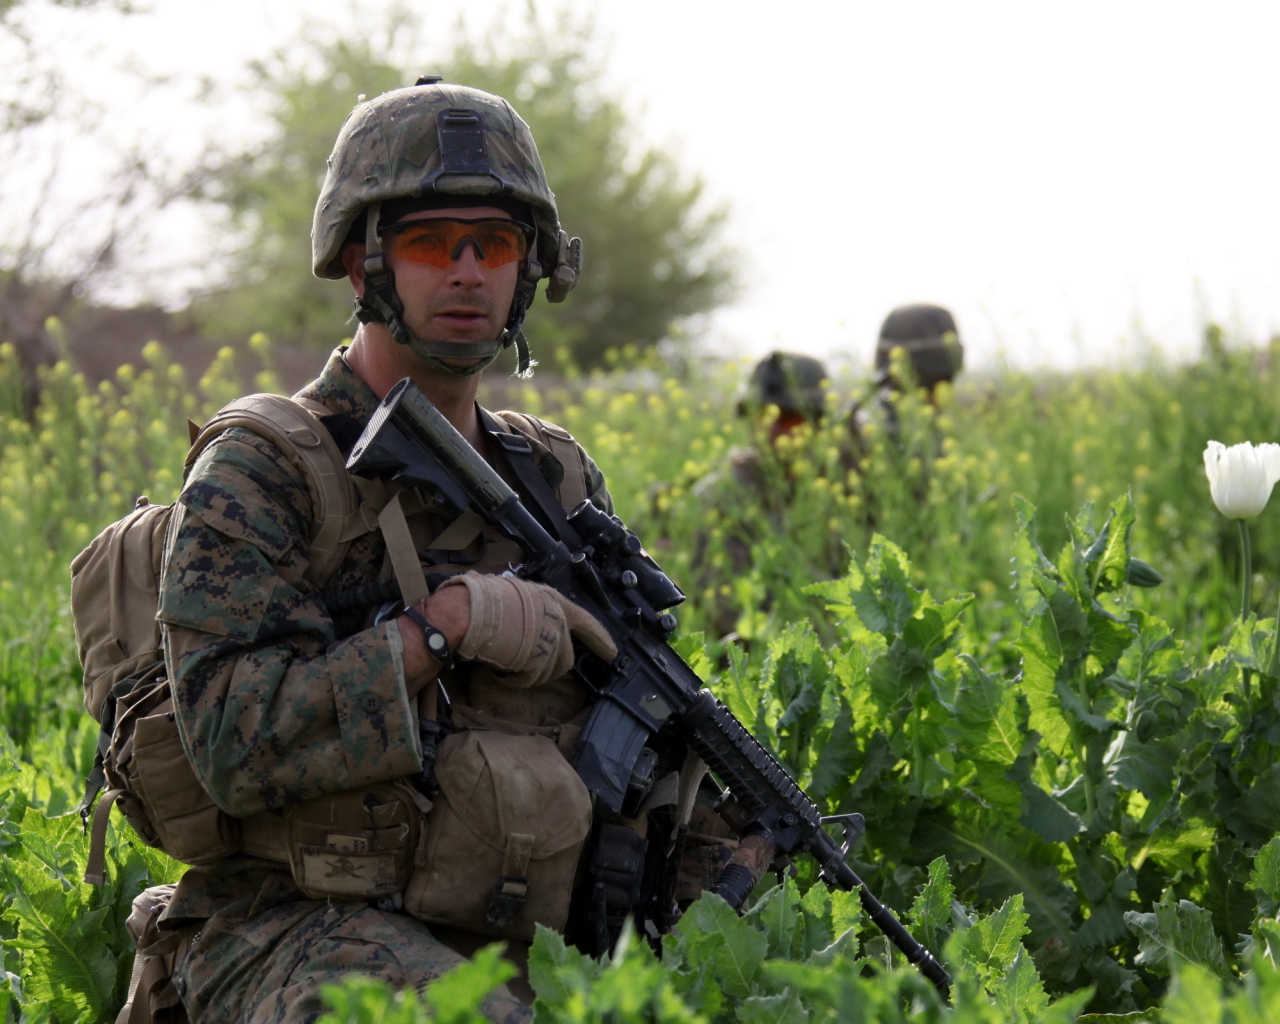 Солдат с винтовкой в траве